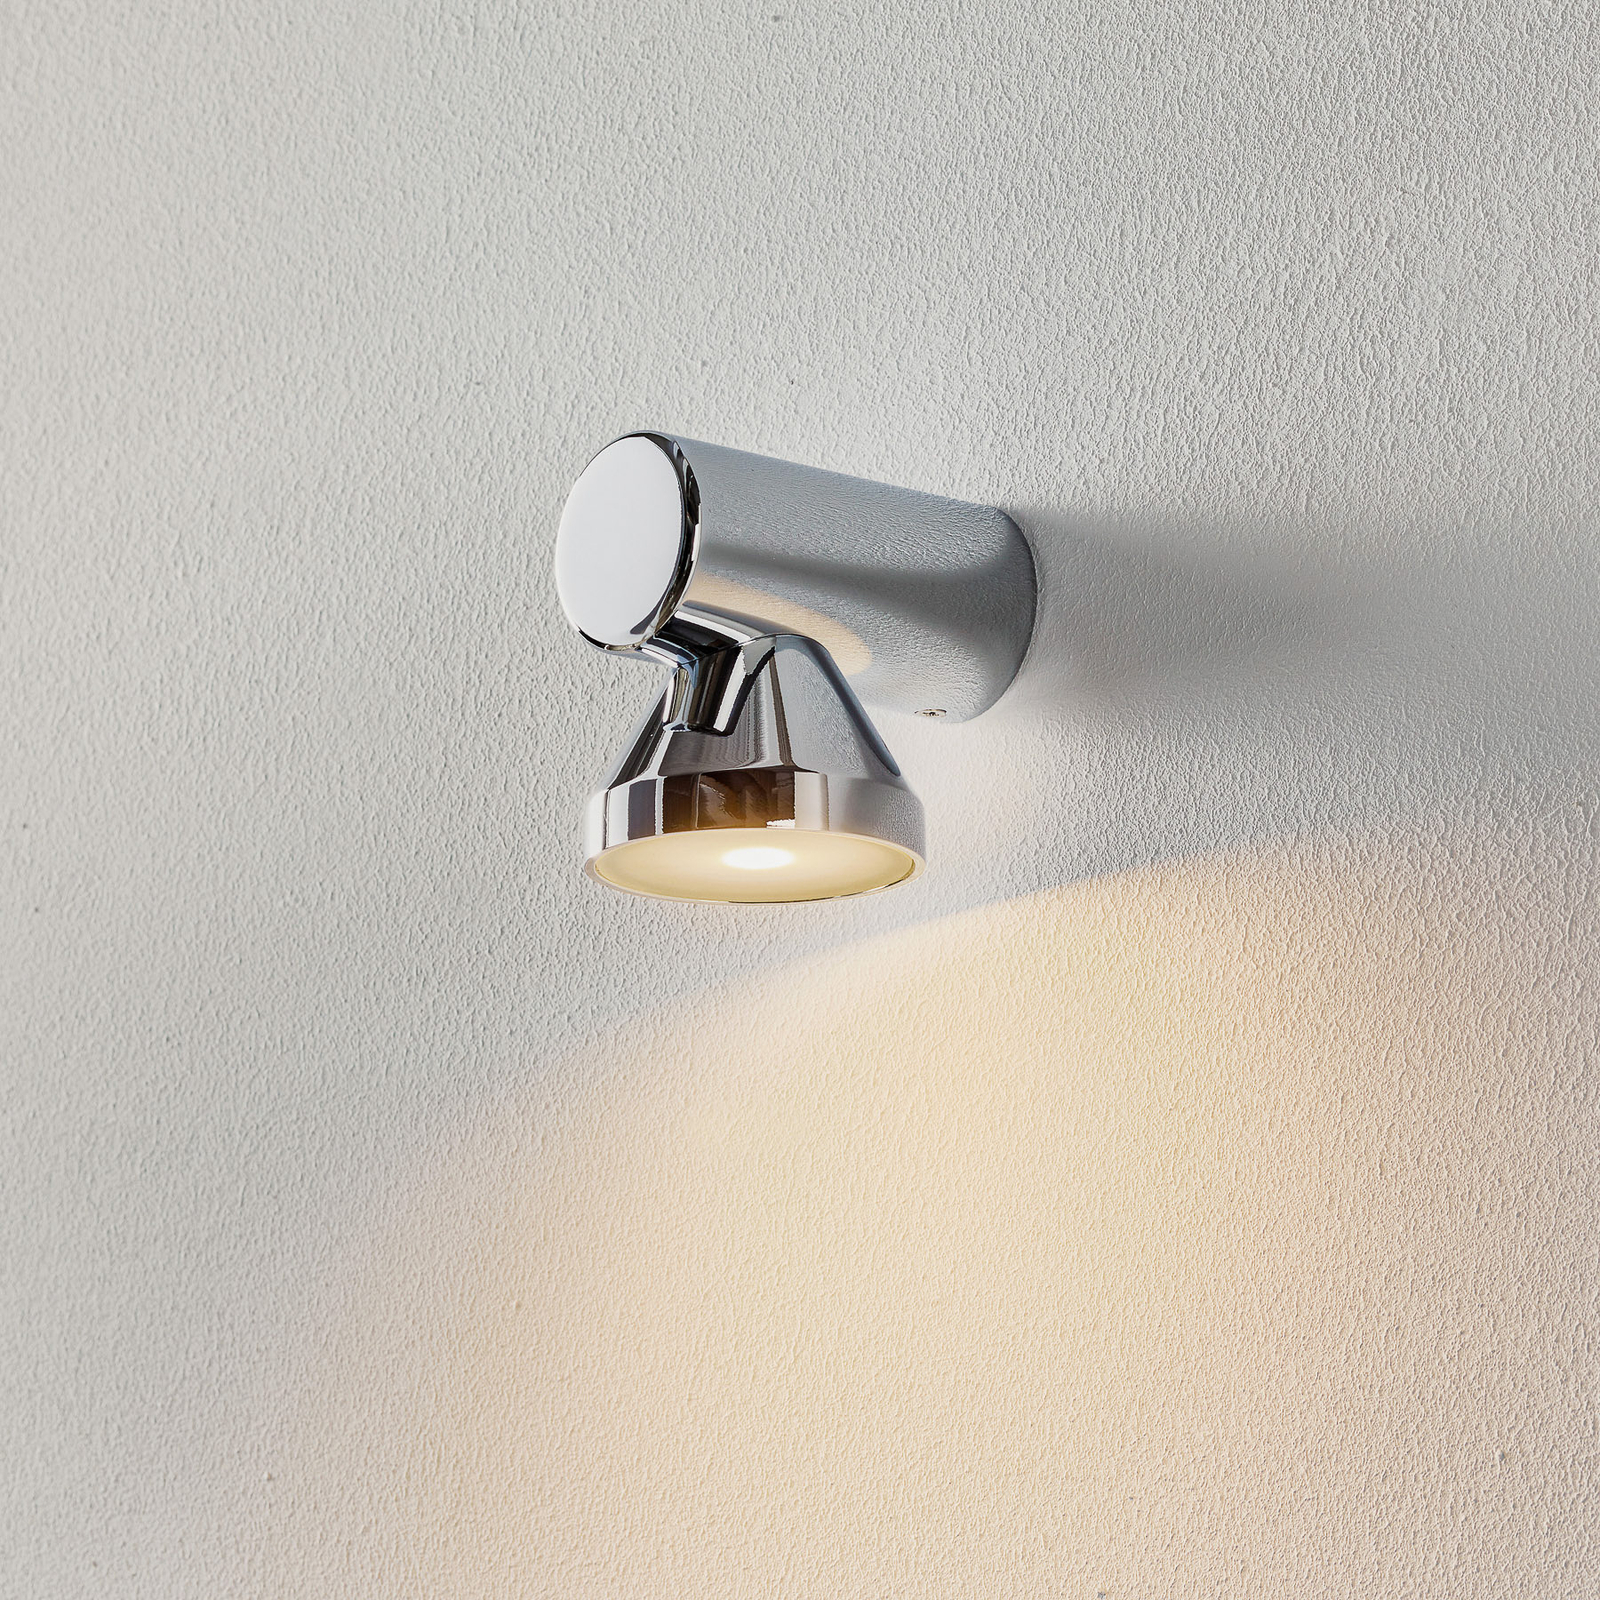 Key LED wall light, one-bulb, chrome